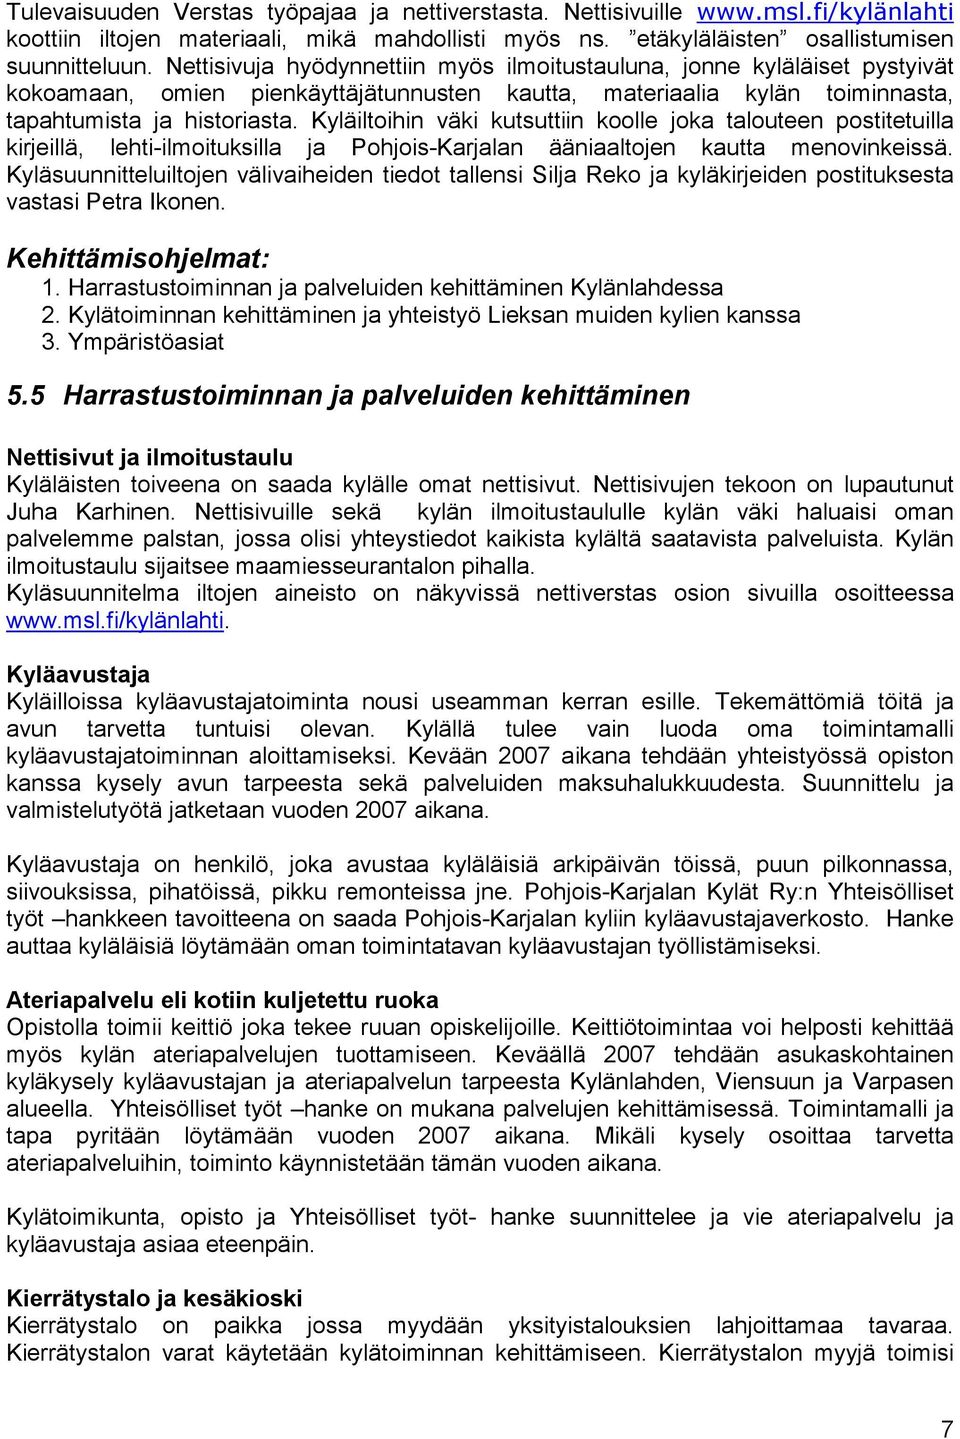 Kyläiltoihin väki kutsuttiin koolle joka talouteen postitetuilla kirjeillä, lehti-ilmoituksilla ja Pohjois-Karjalan ääniaaltojen kautta menovinkeissä.